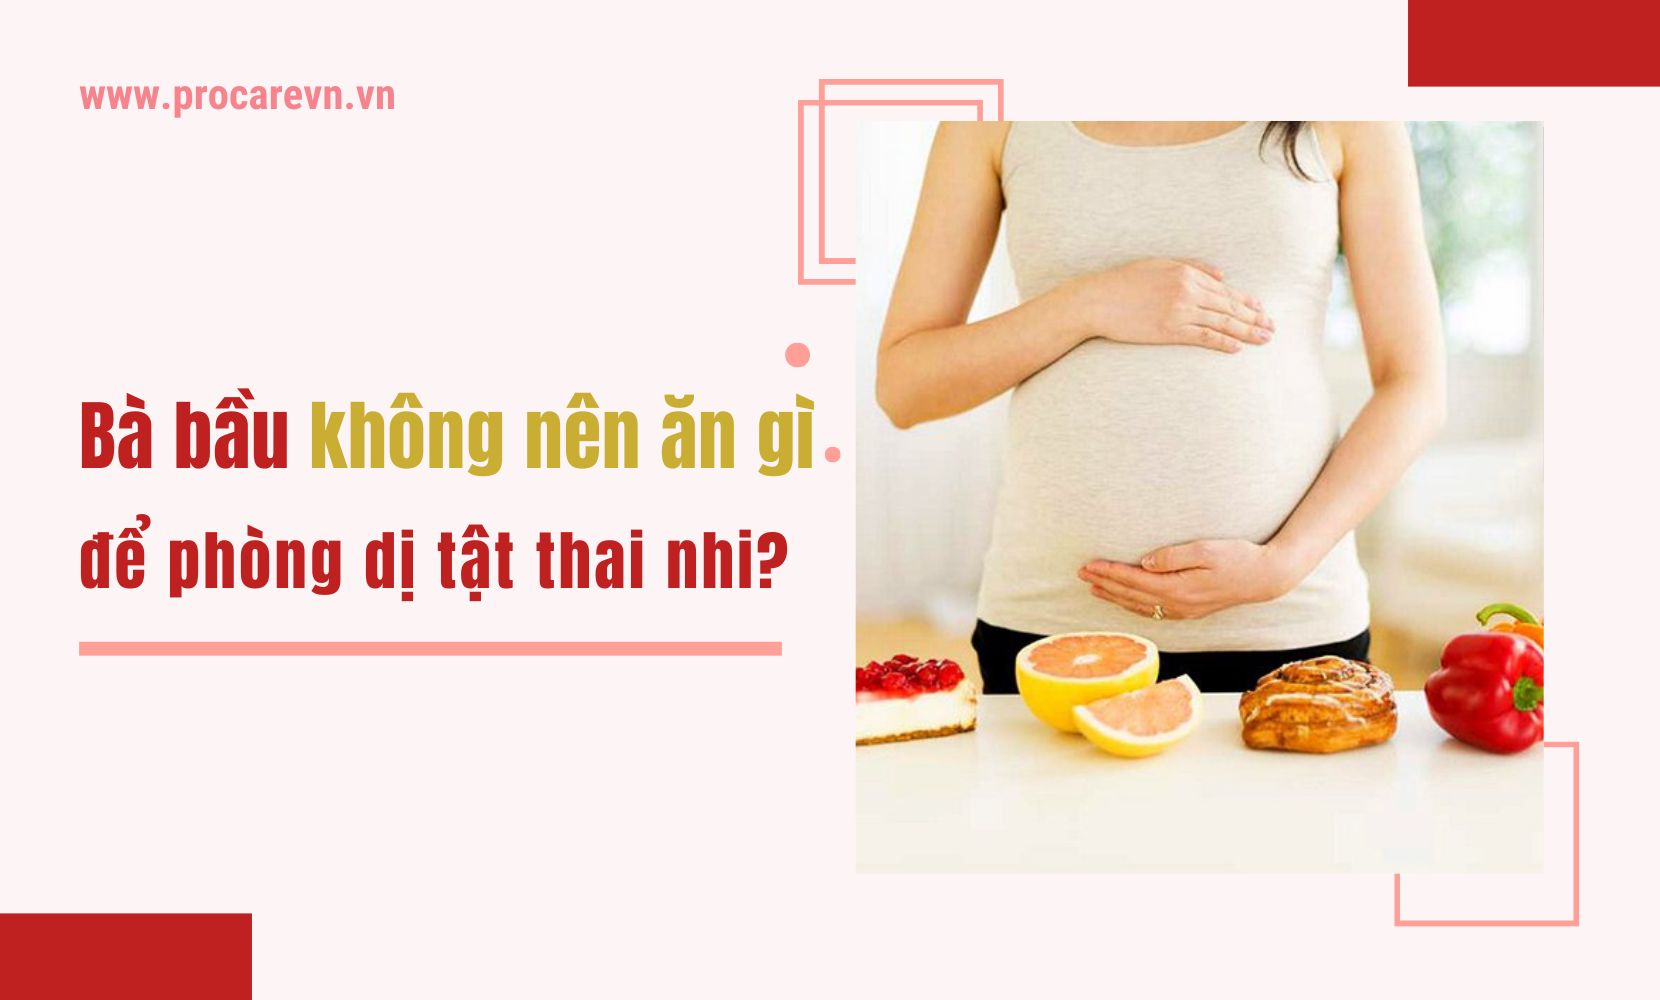 Những loại thực phẩm nào có chứa chất bảo quản hoặc chất hóa học nên tránh khi mới có thai?
